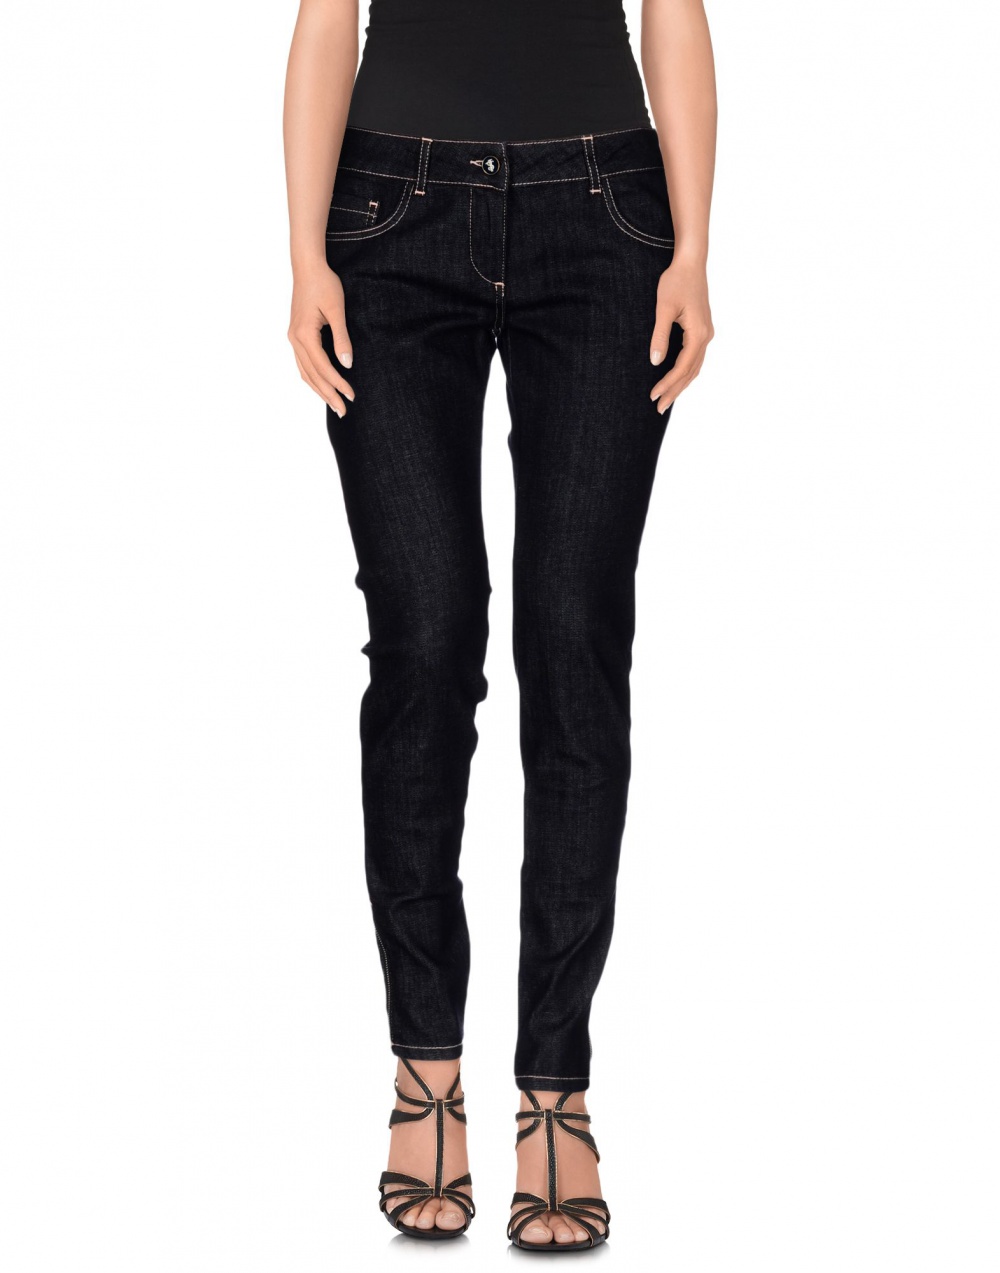 Новые джинсы TWIN-SET Simona Barbieri размер 27 (42)